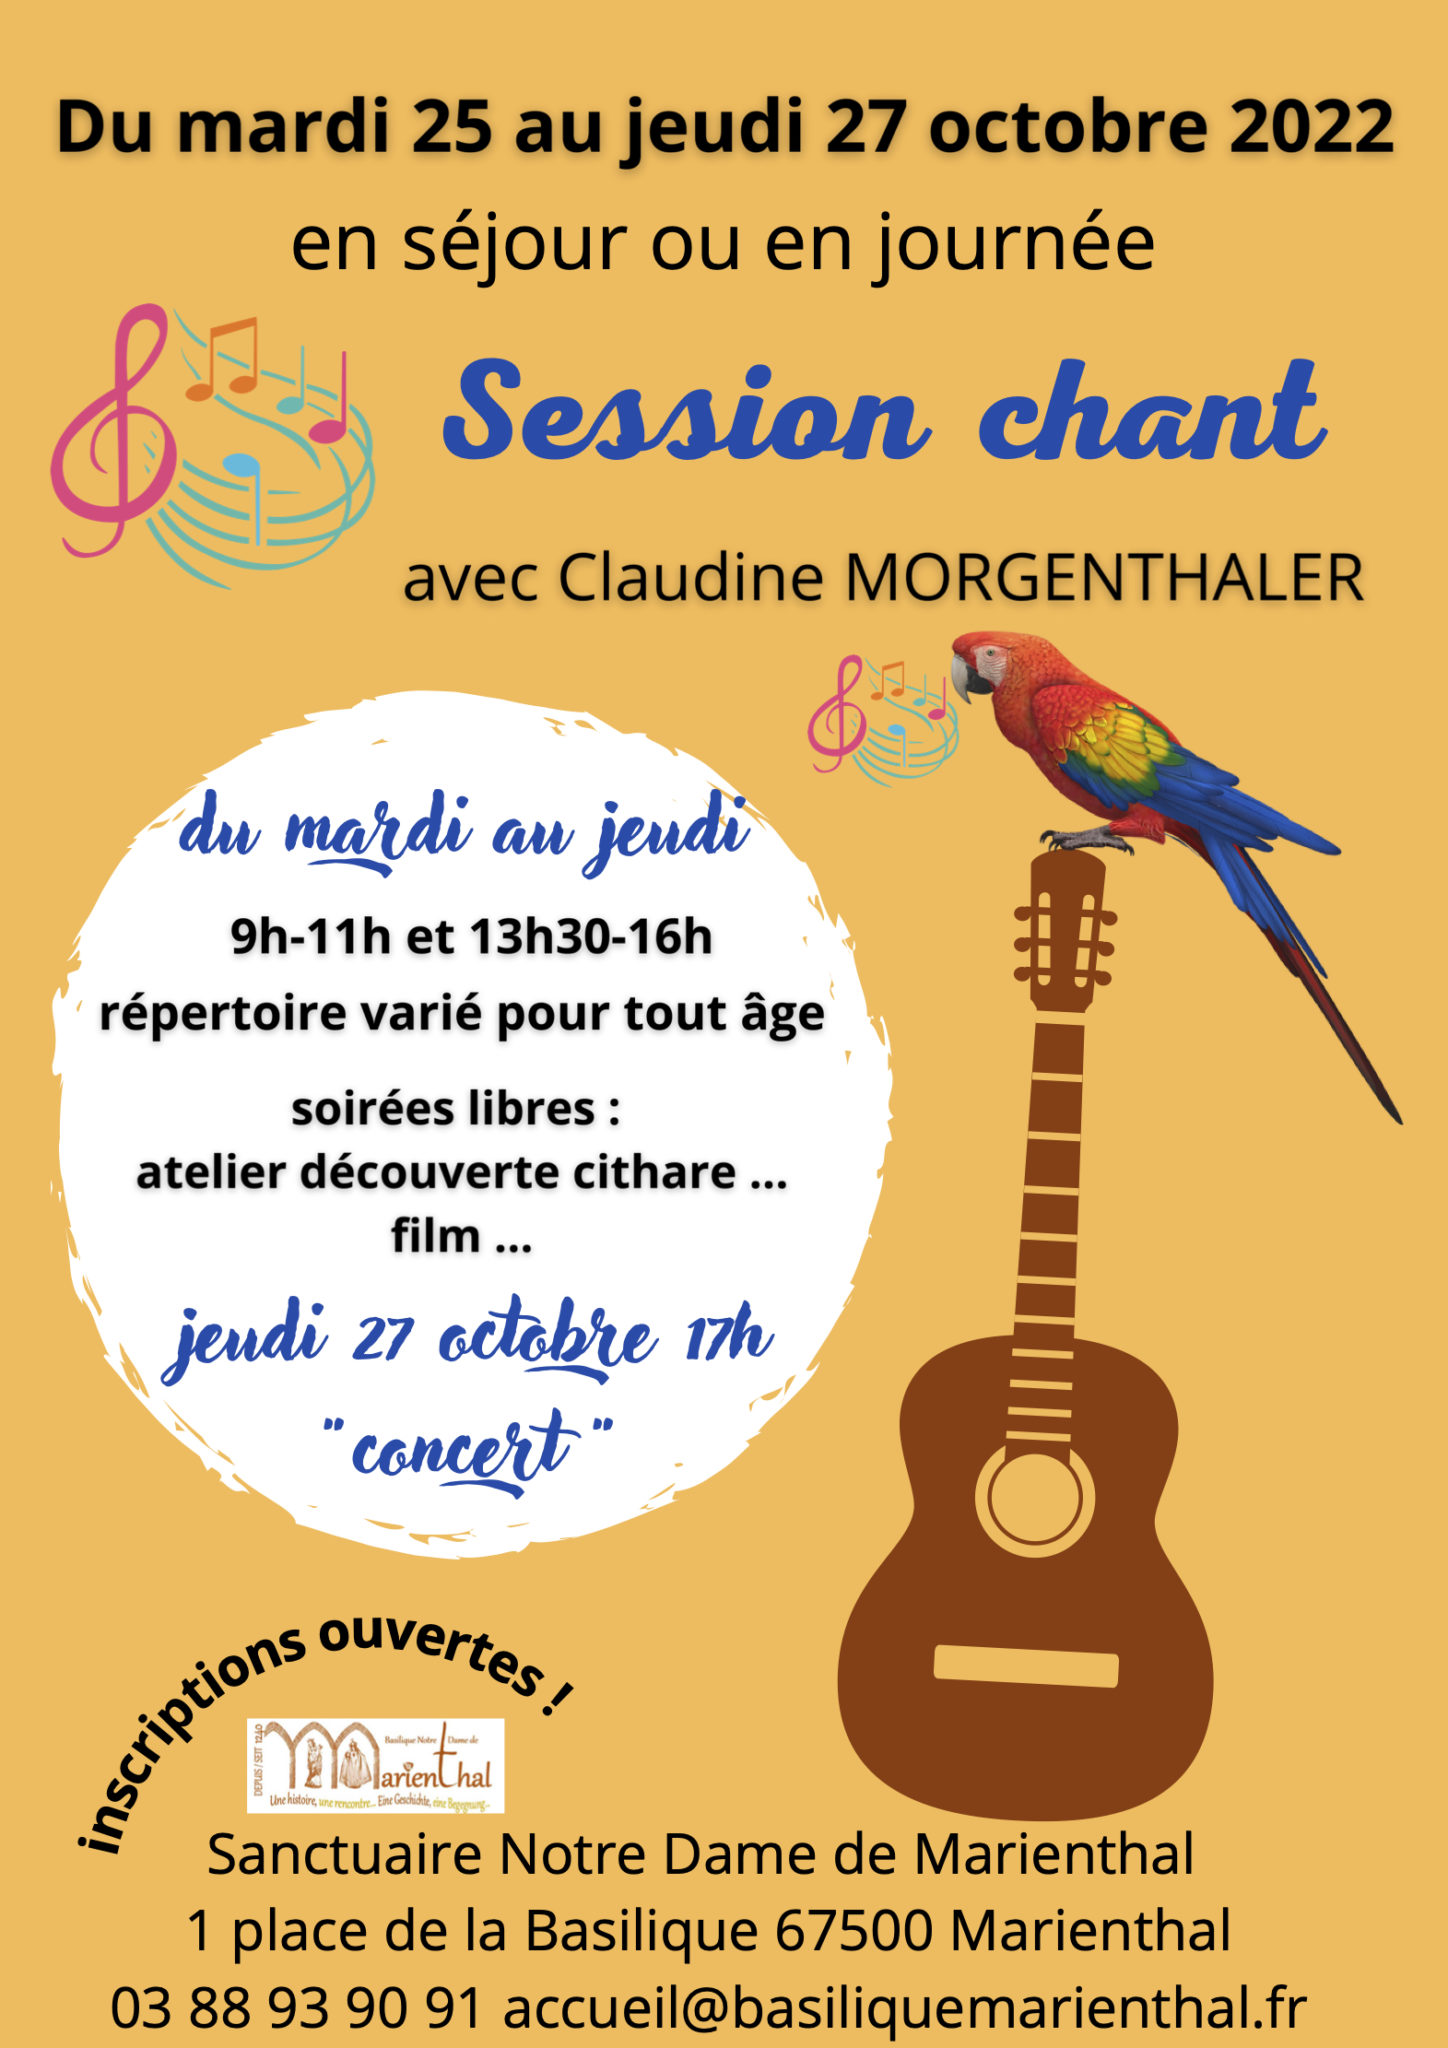 Affiche de la session Chant de Marienthal